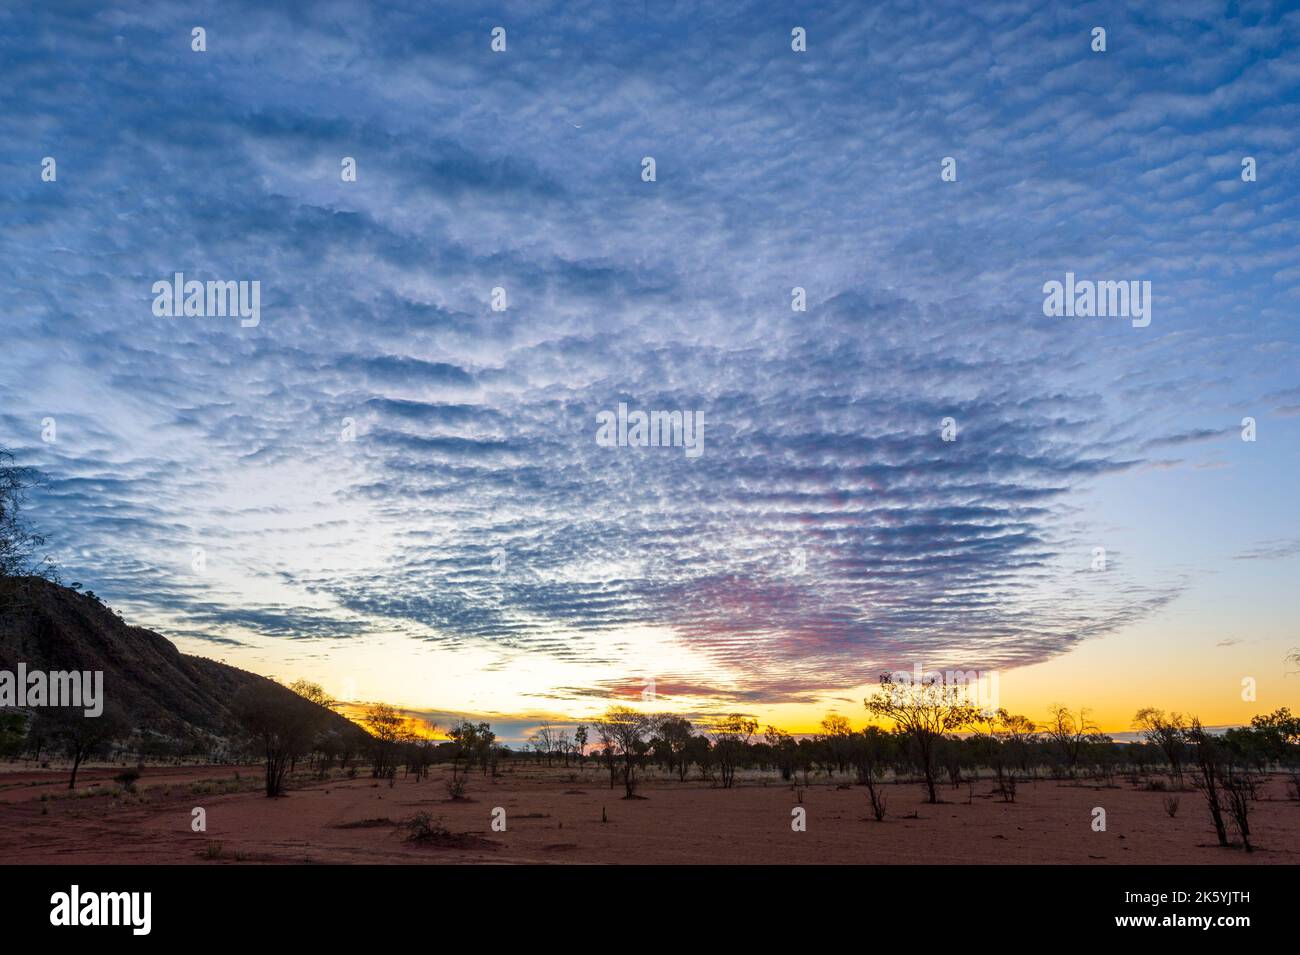 Superbe coucher de soleil avec ciel de maquereau au-dessus de la chaîne d'Arookara, désert de Simpson, Outback australien, territoire du Nord, territoire du Nord, territoire du Nord, Australie Banque D'Images